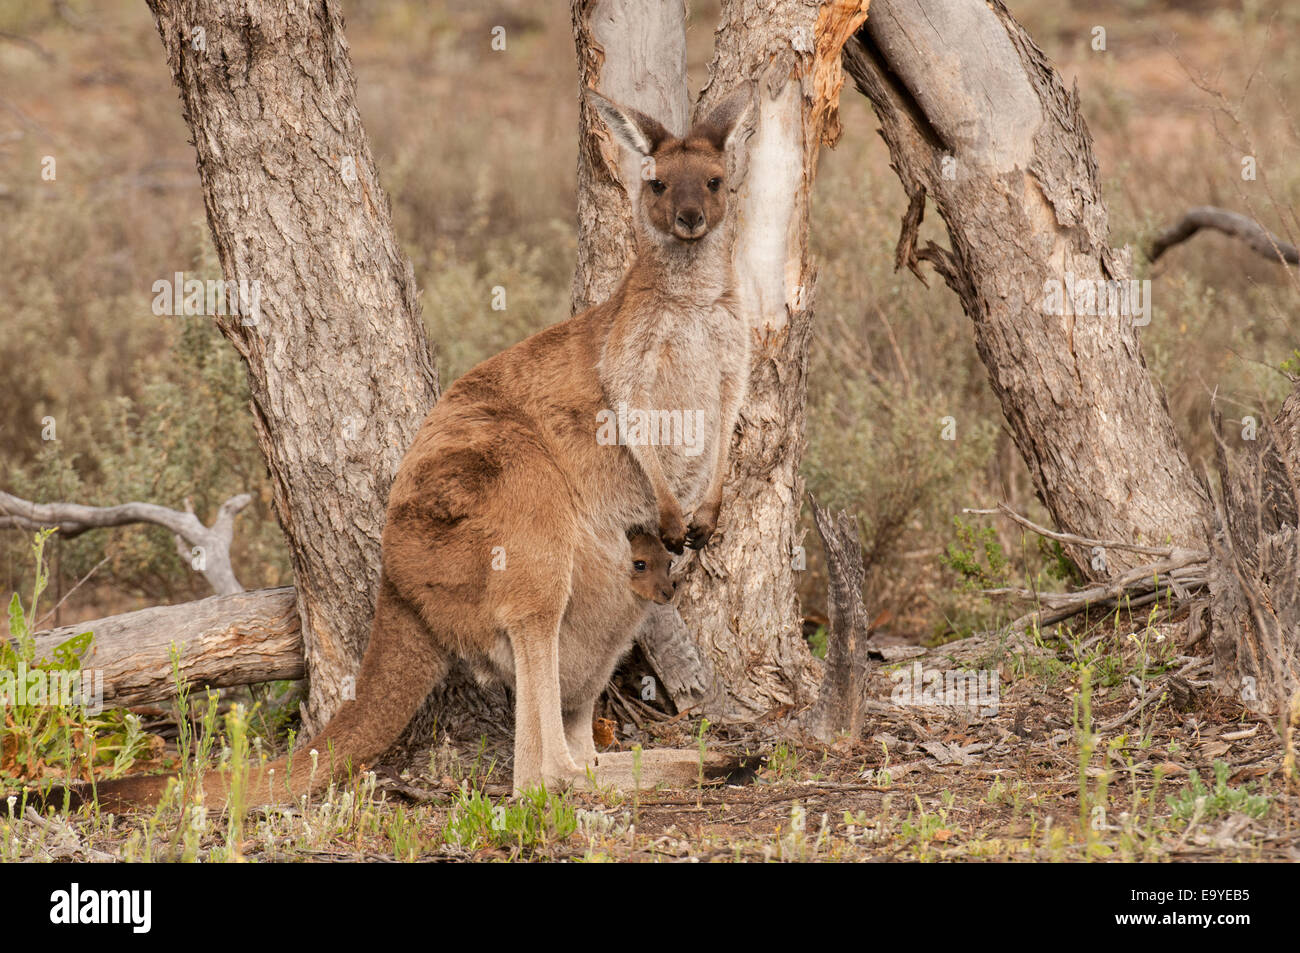 Stock Foto von einem westlichen grauen Känguru stehend. Stockfoto